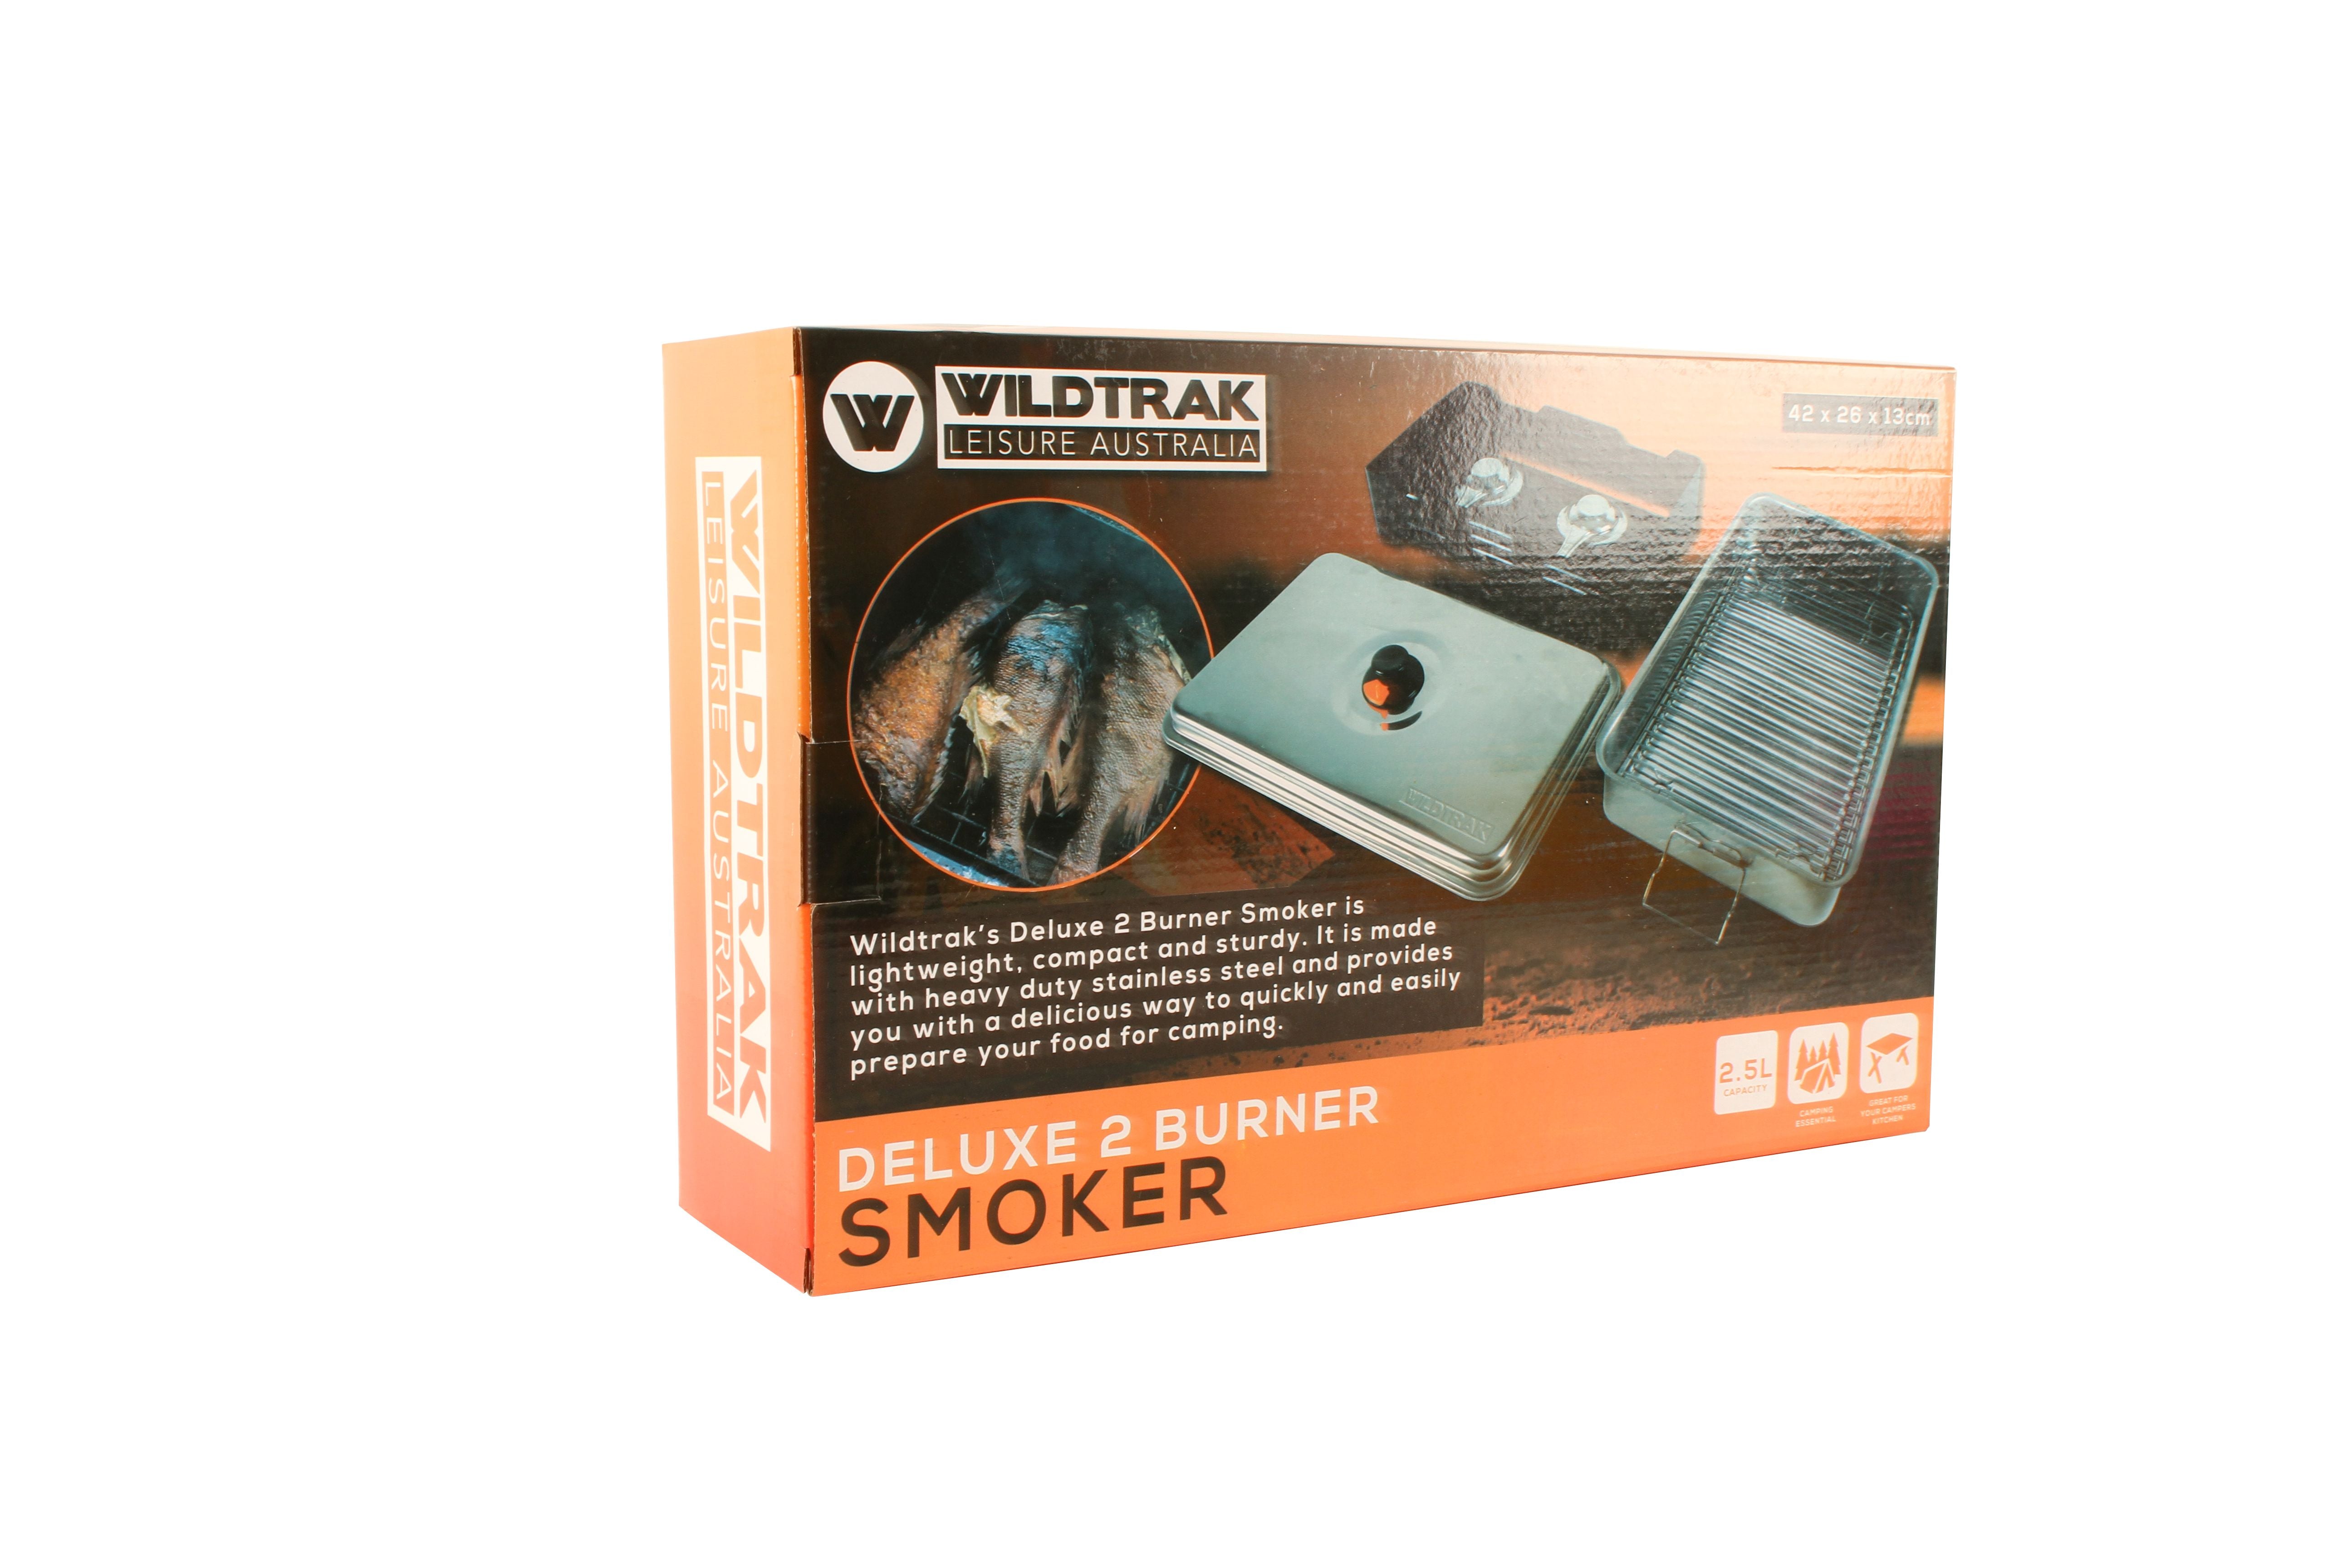 DELUXE 2 BURNER SMOKER